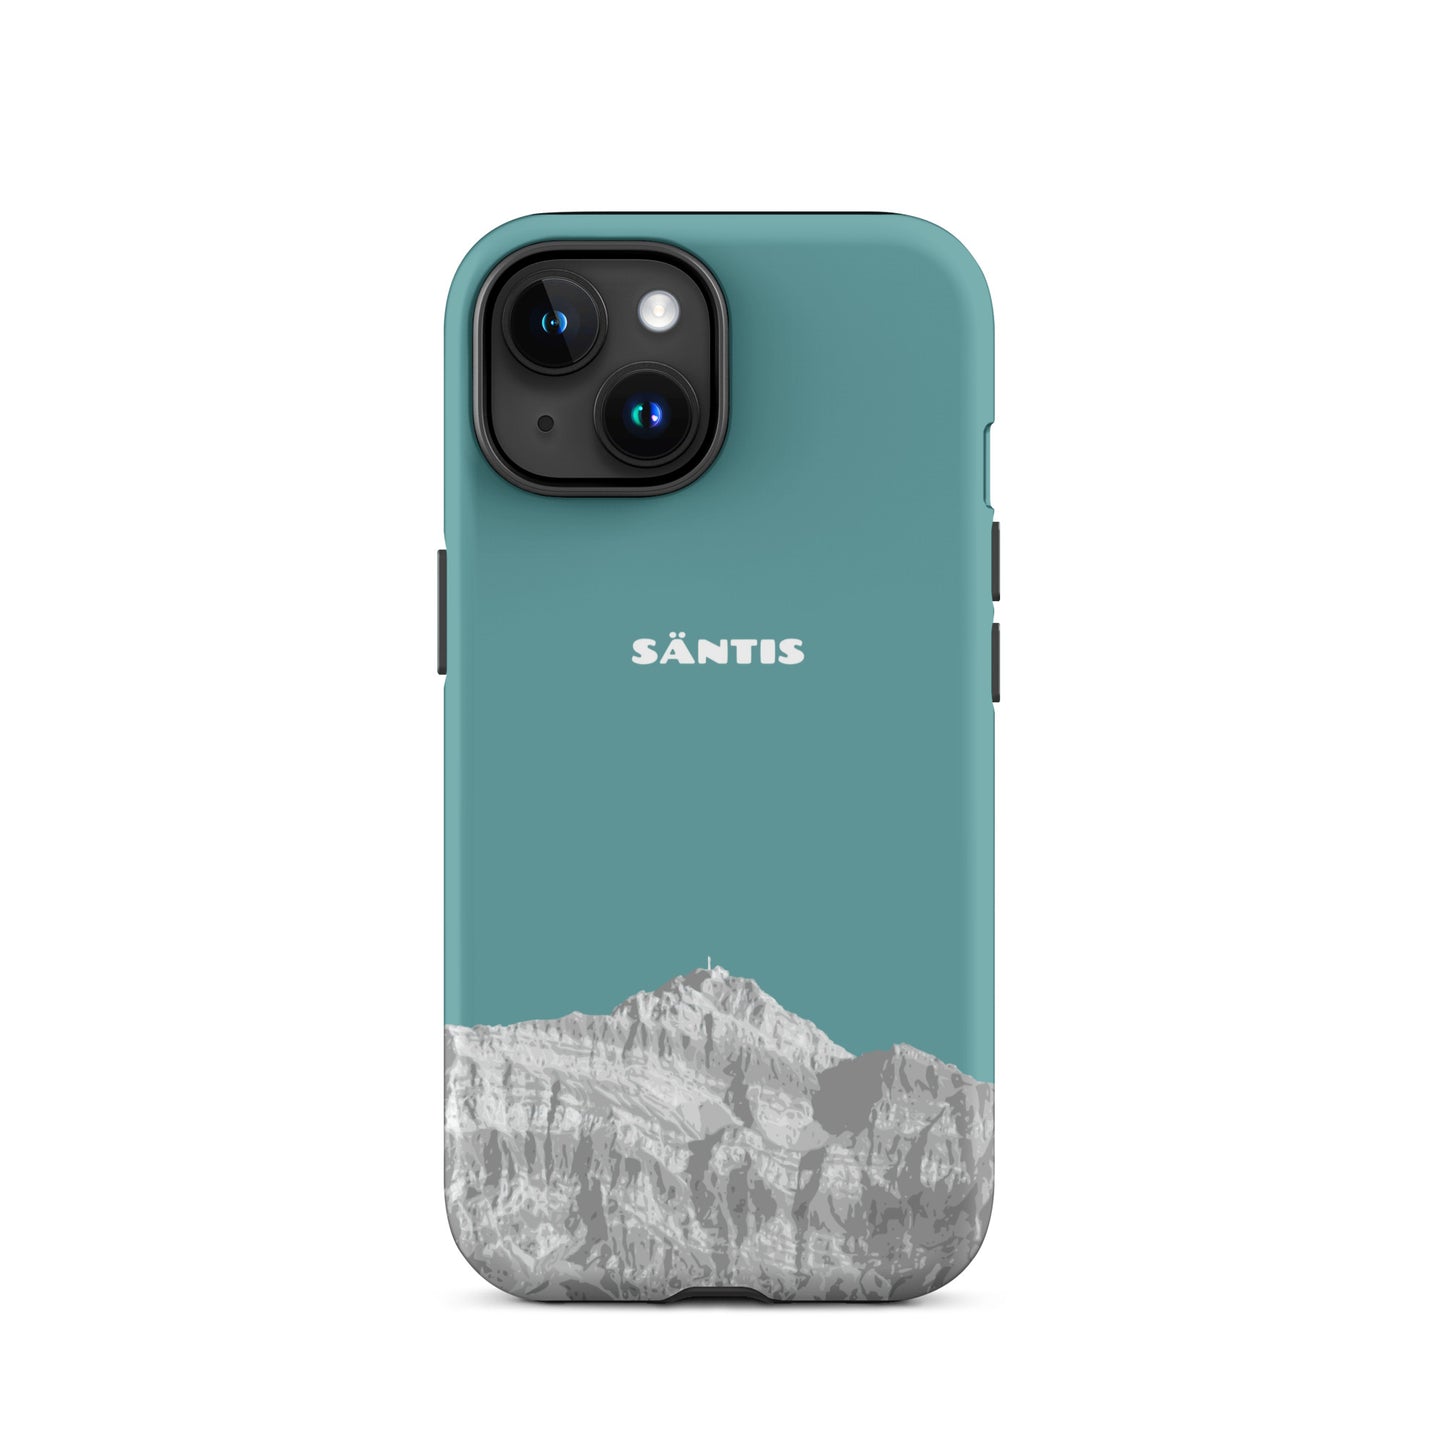 Hülle für das iPhone 15 von Apple in der Farbe Kadettenblau, dass den Säntis im Alpstein zeigt.